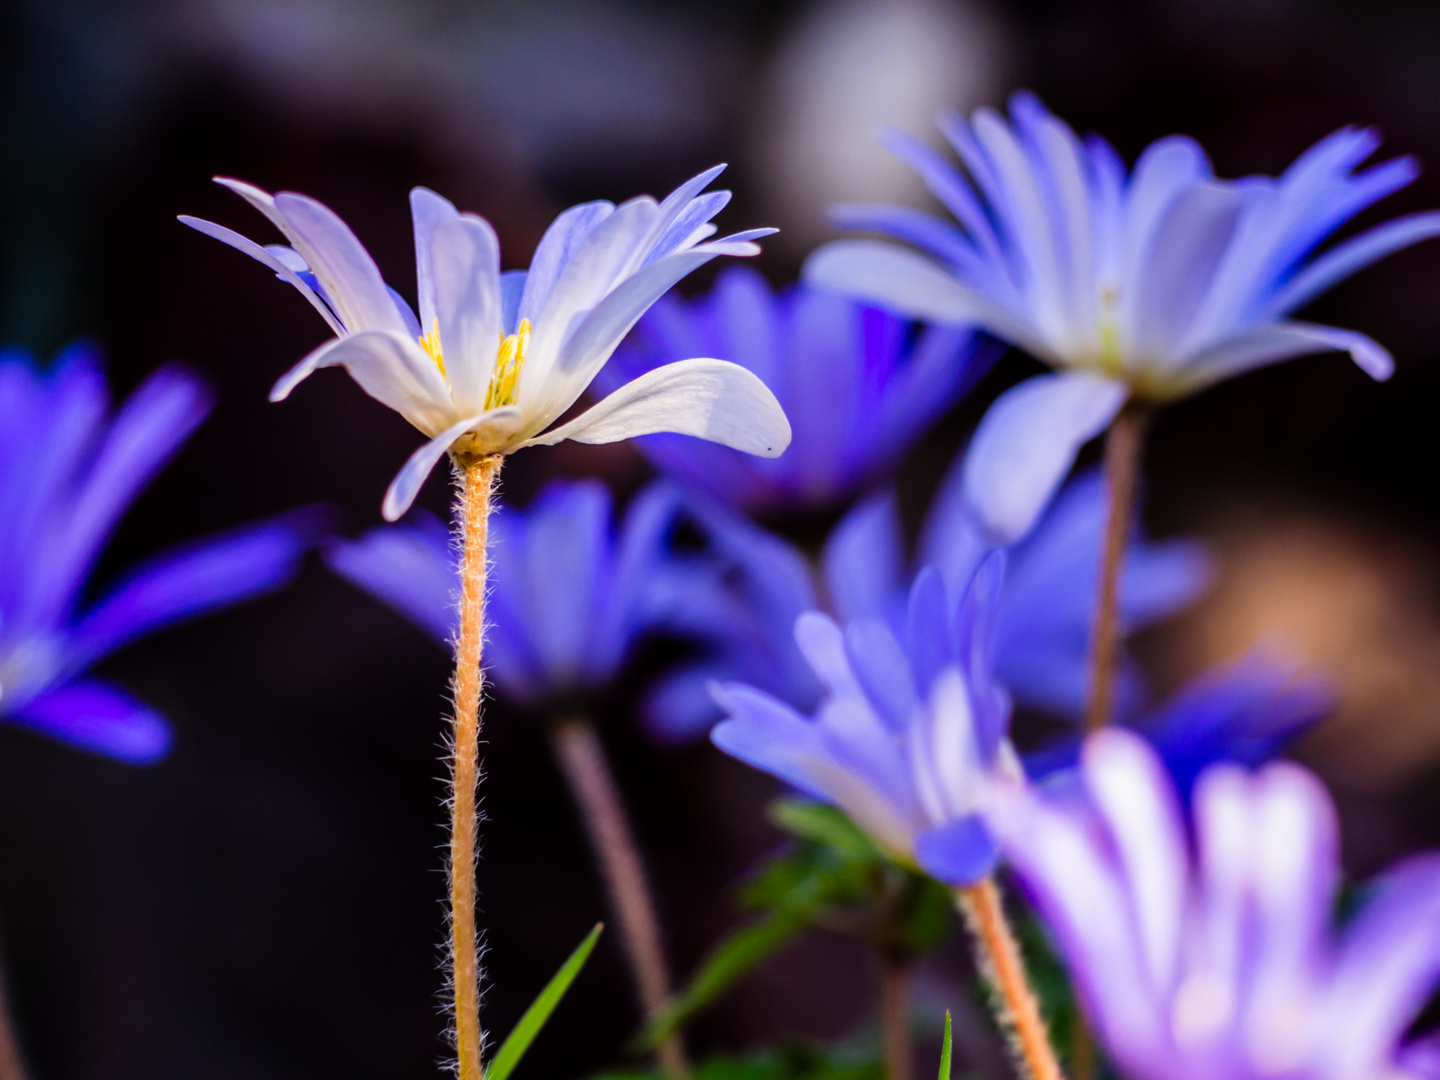 Blaue Blumen Power